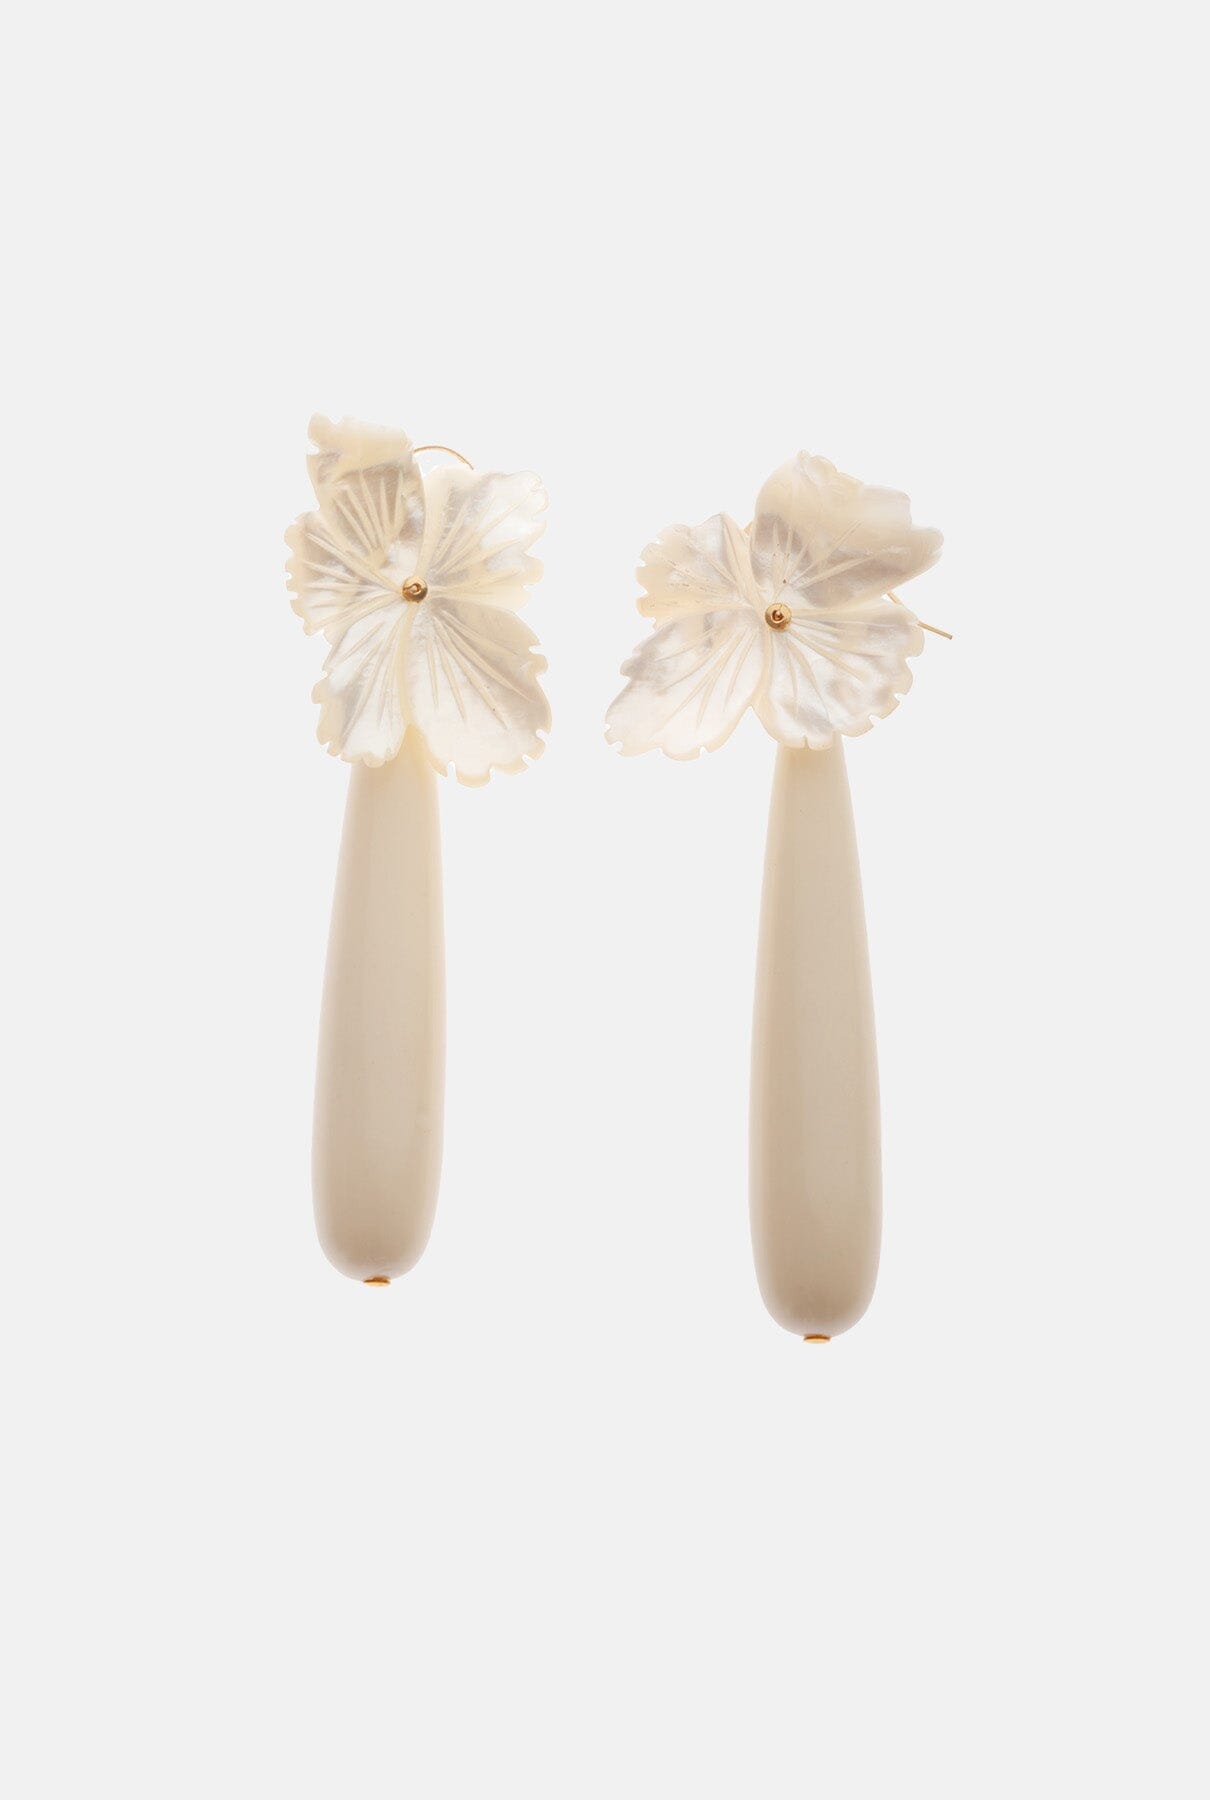 Blossom Bone Earrings Earrings La Morenita 